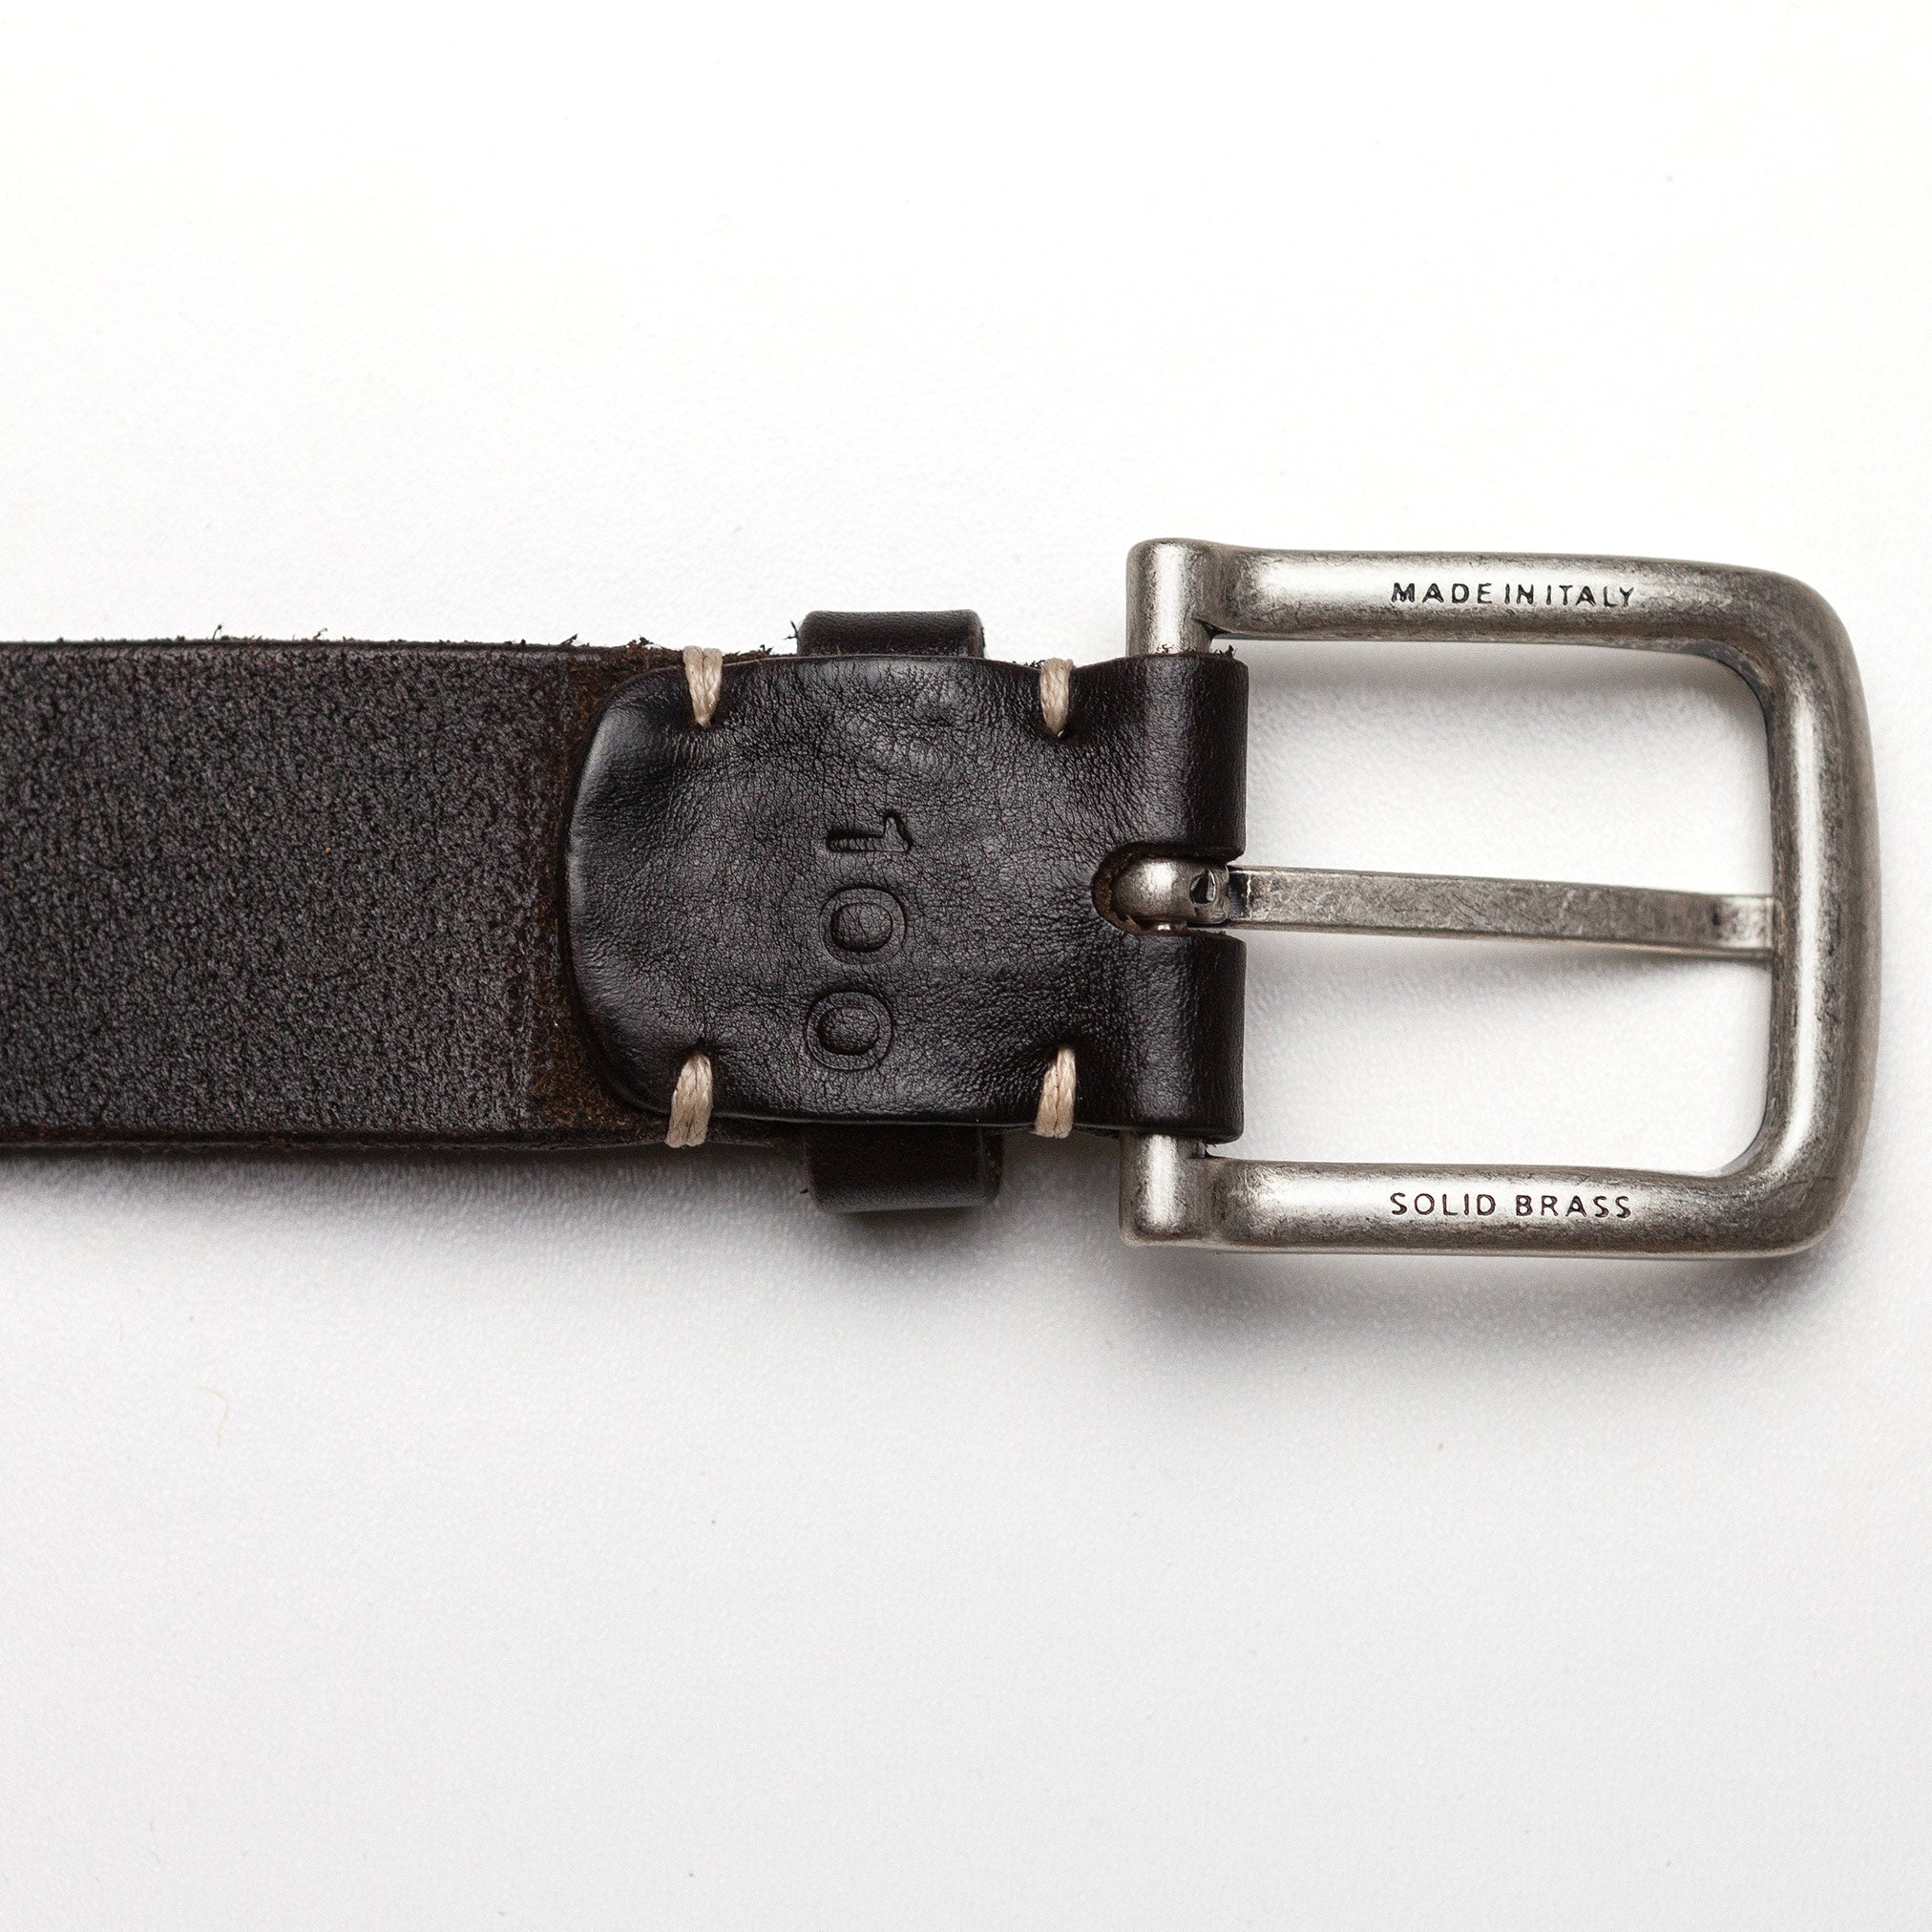 Dark Brown Belt with Contrast Stitching